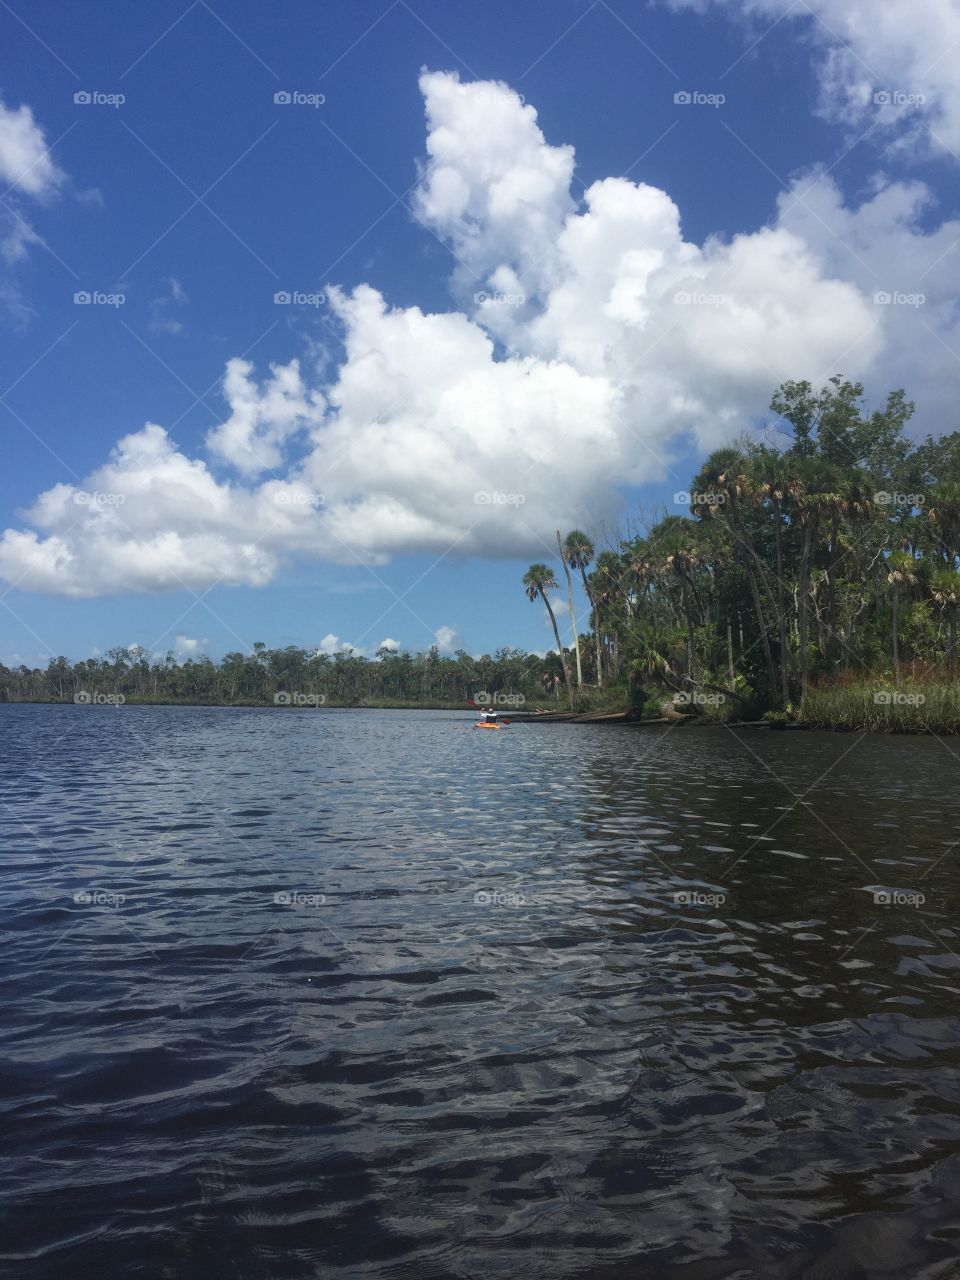 Florida river kayaking